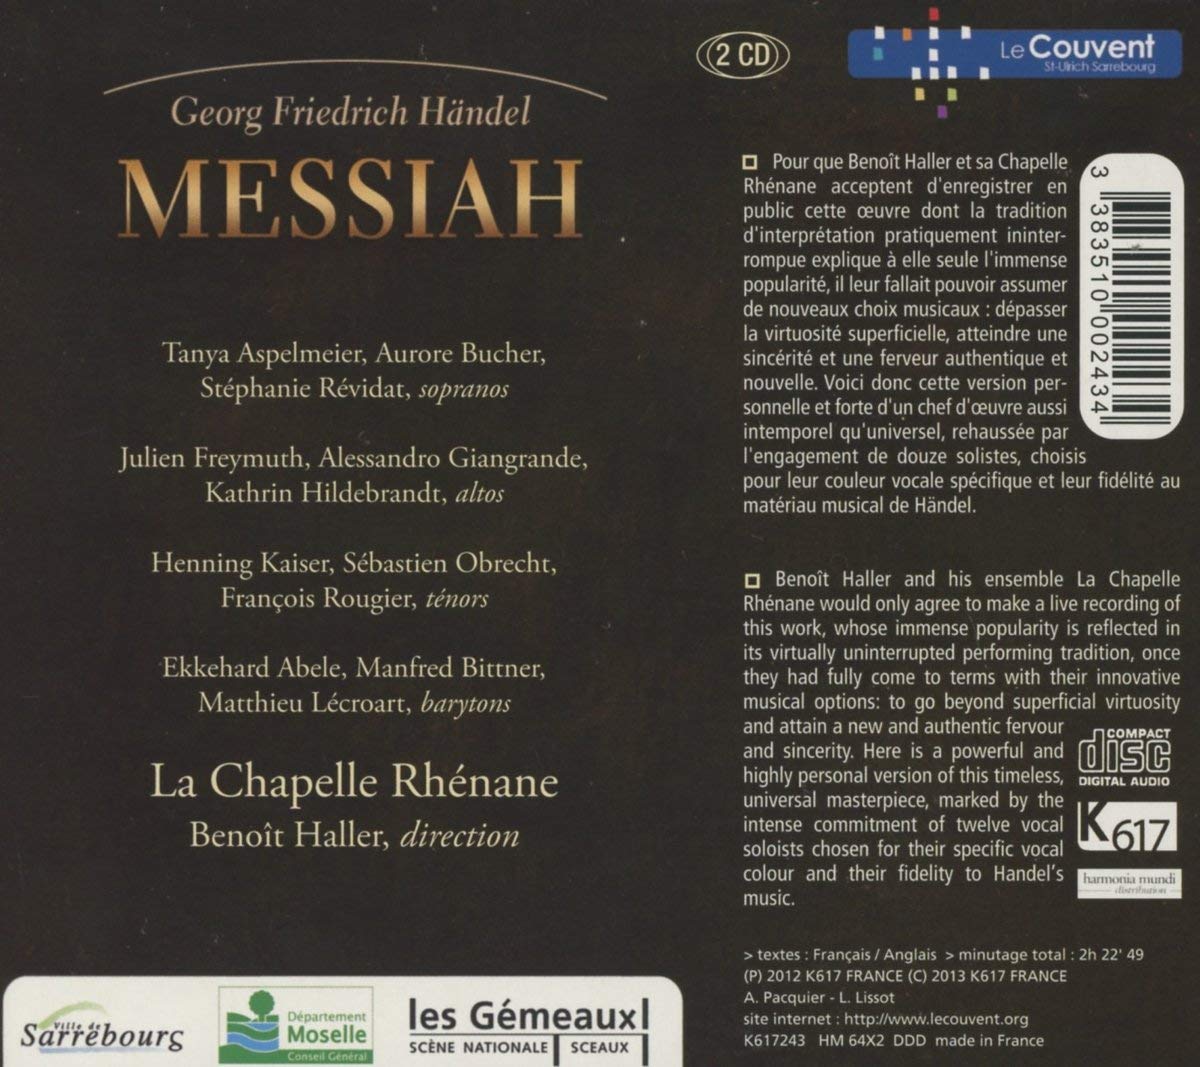 Handel: Messiah (Mesjasz) - slide-1